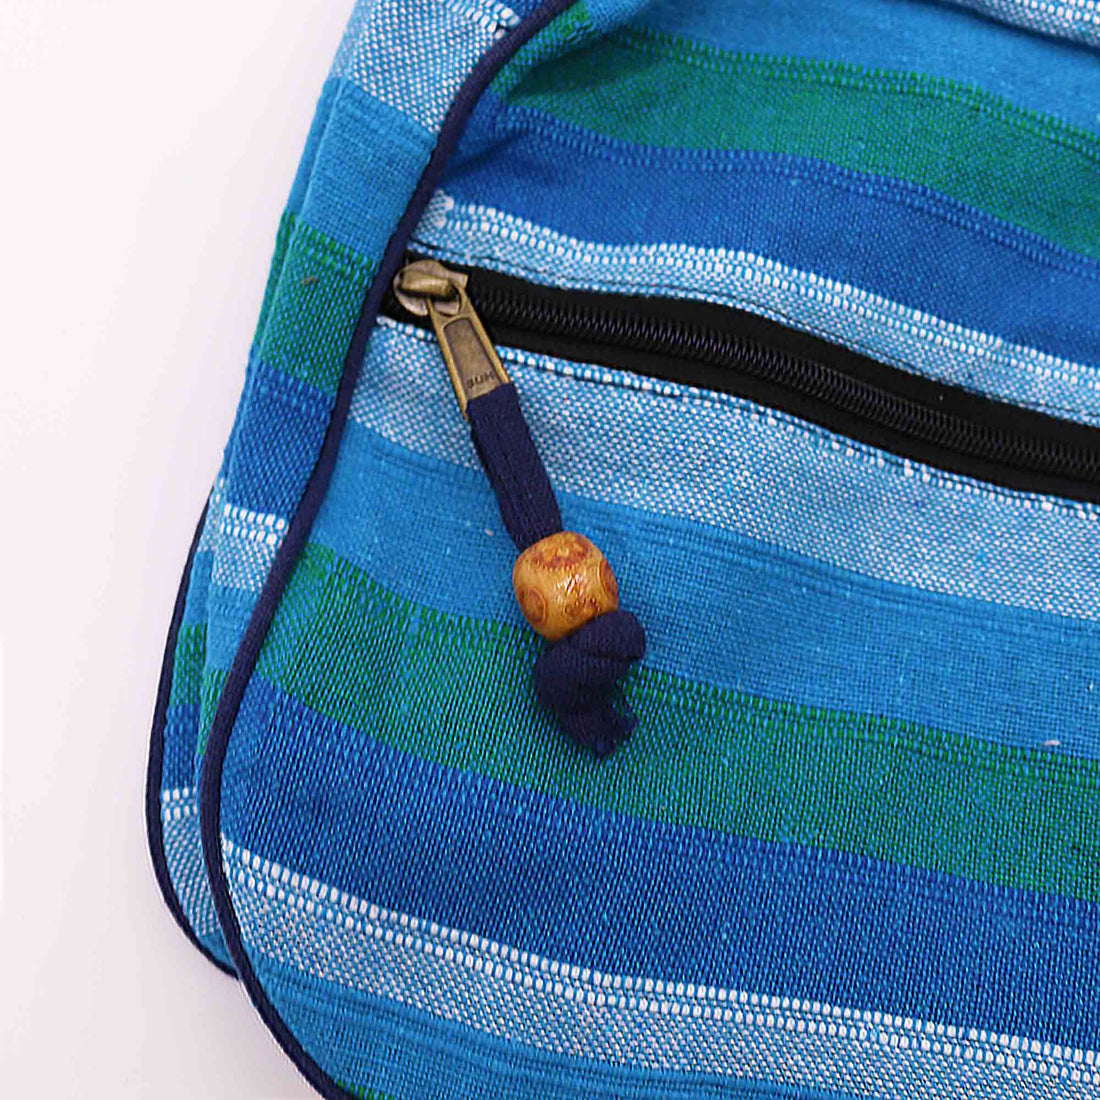 Lrg Nepal Sling Bag  (Adjustable Strap) - Blue Rivers